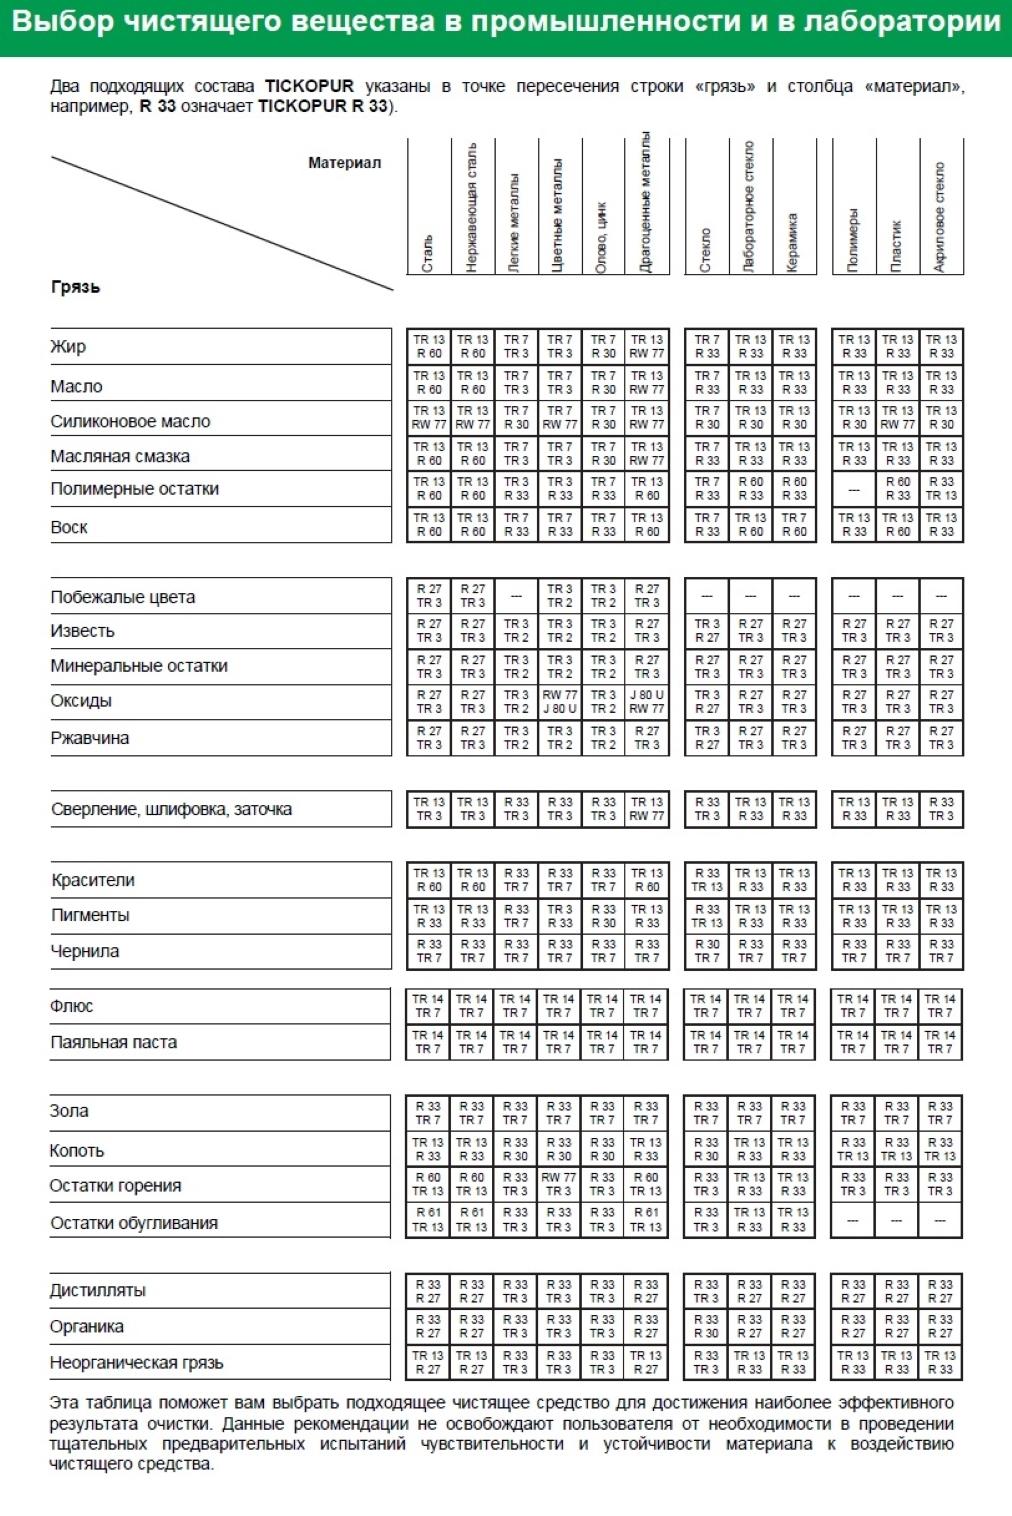 Таблица выбора чистящего вещества RW 77 TICKOPUR